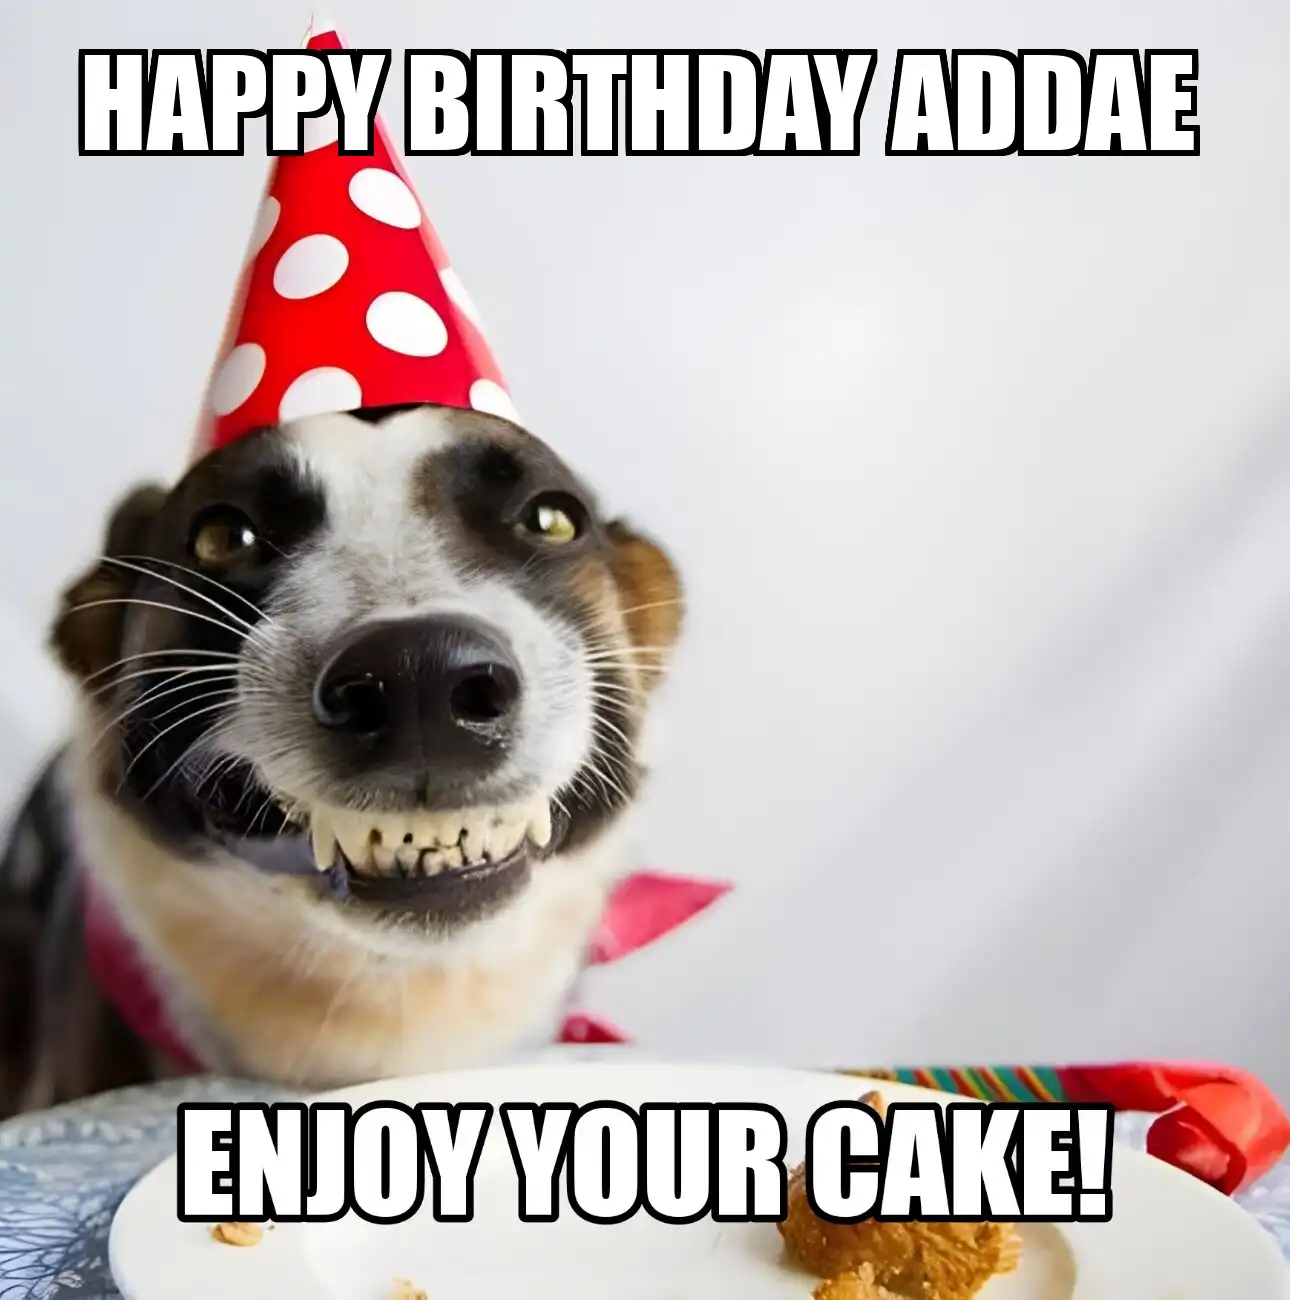 Happy Birthday Addae Enjoy Your Cake Dog Meme